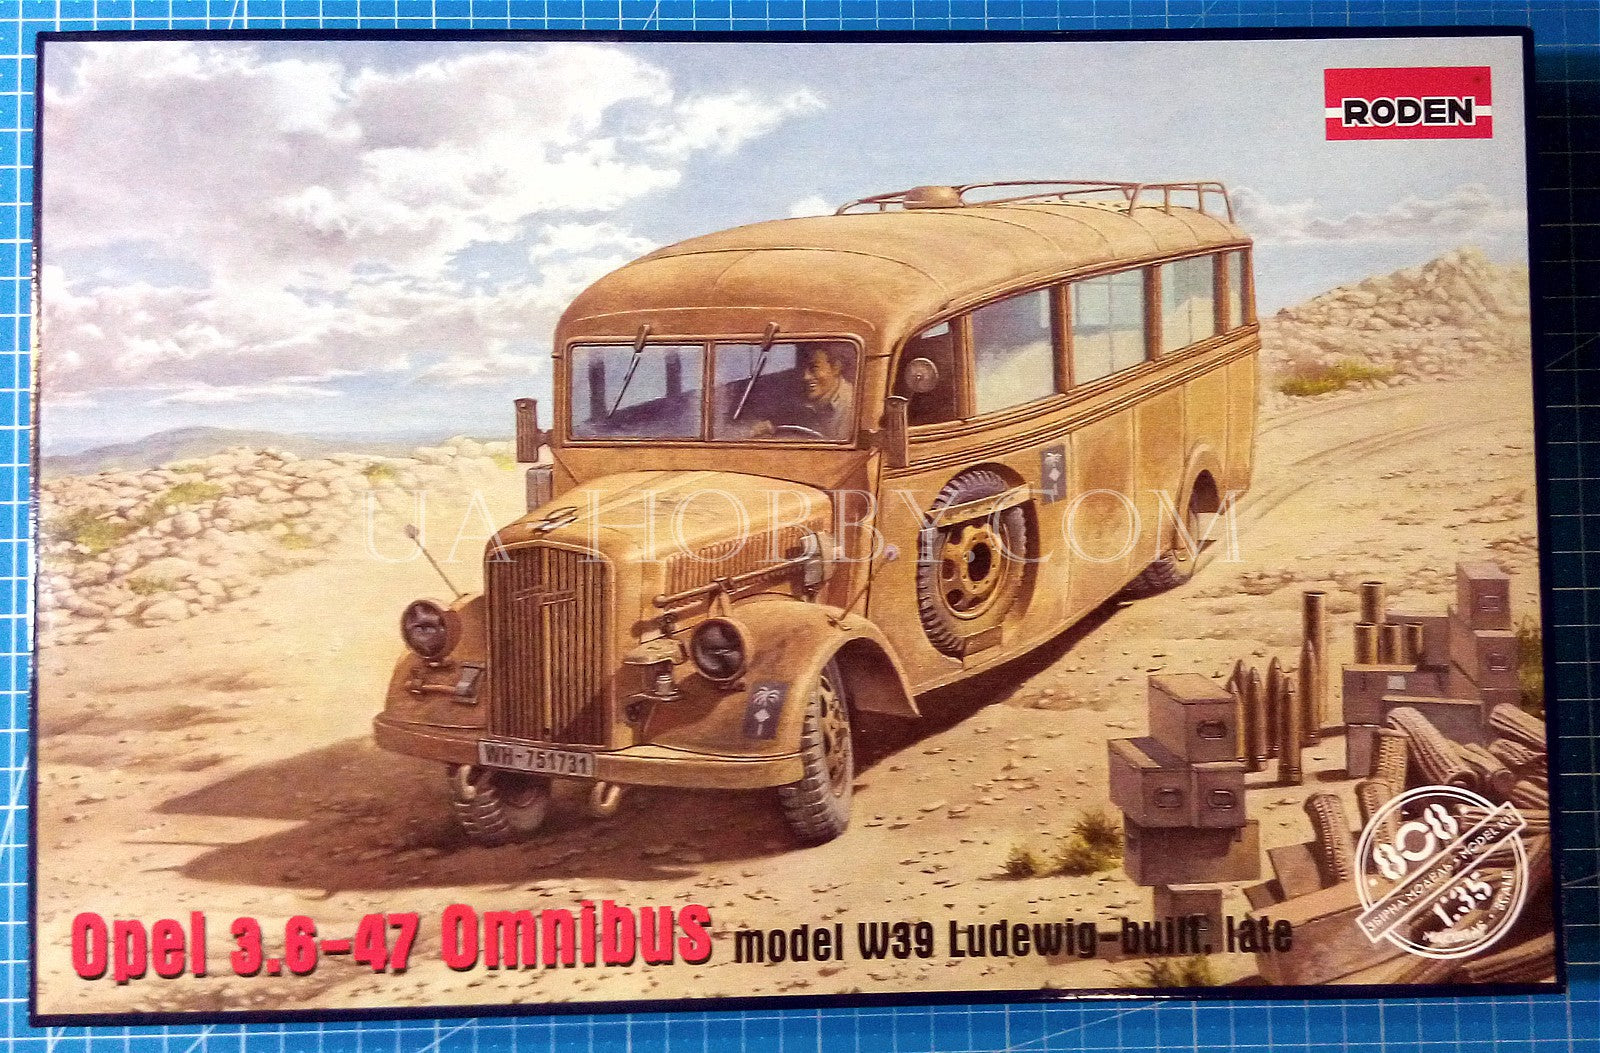 1/35 Opel 3.6-47 Omnibus model W39 Ludewig-built, late. Roden 808